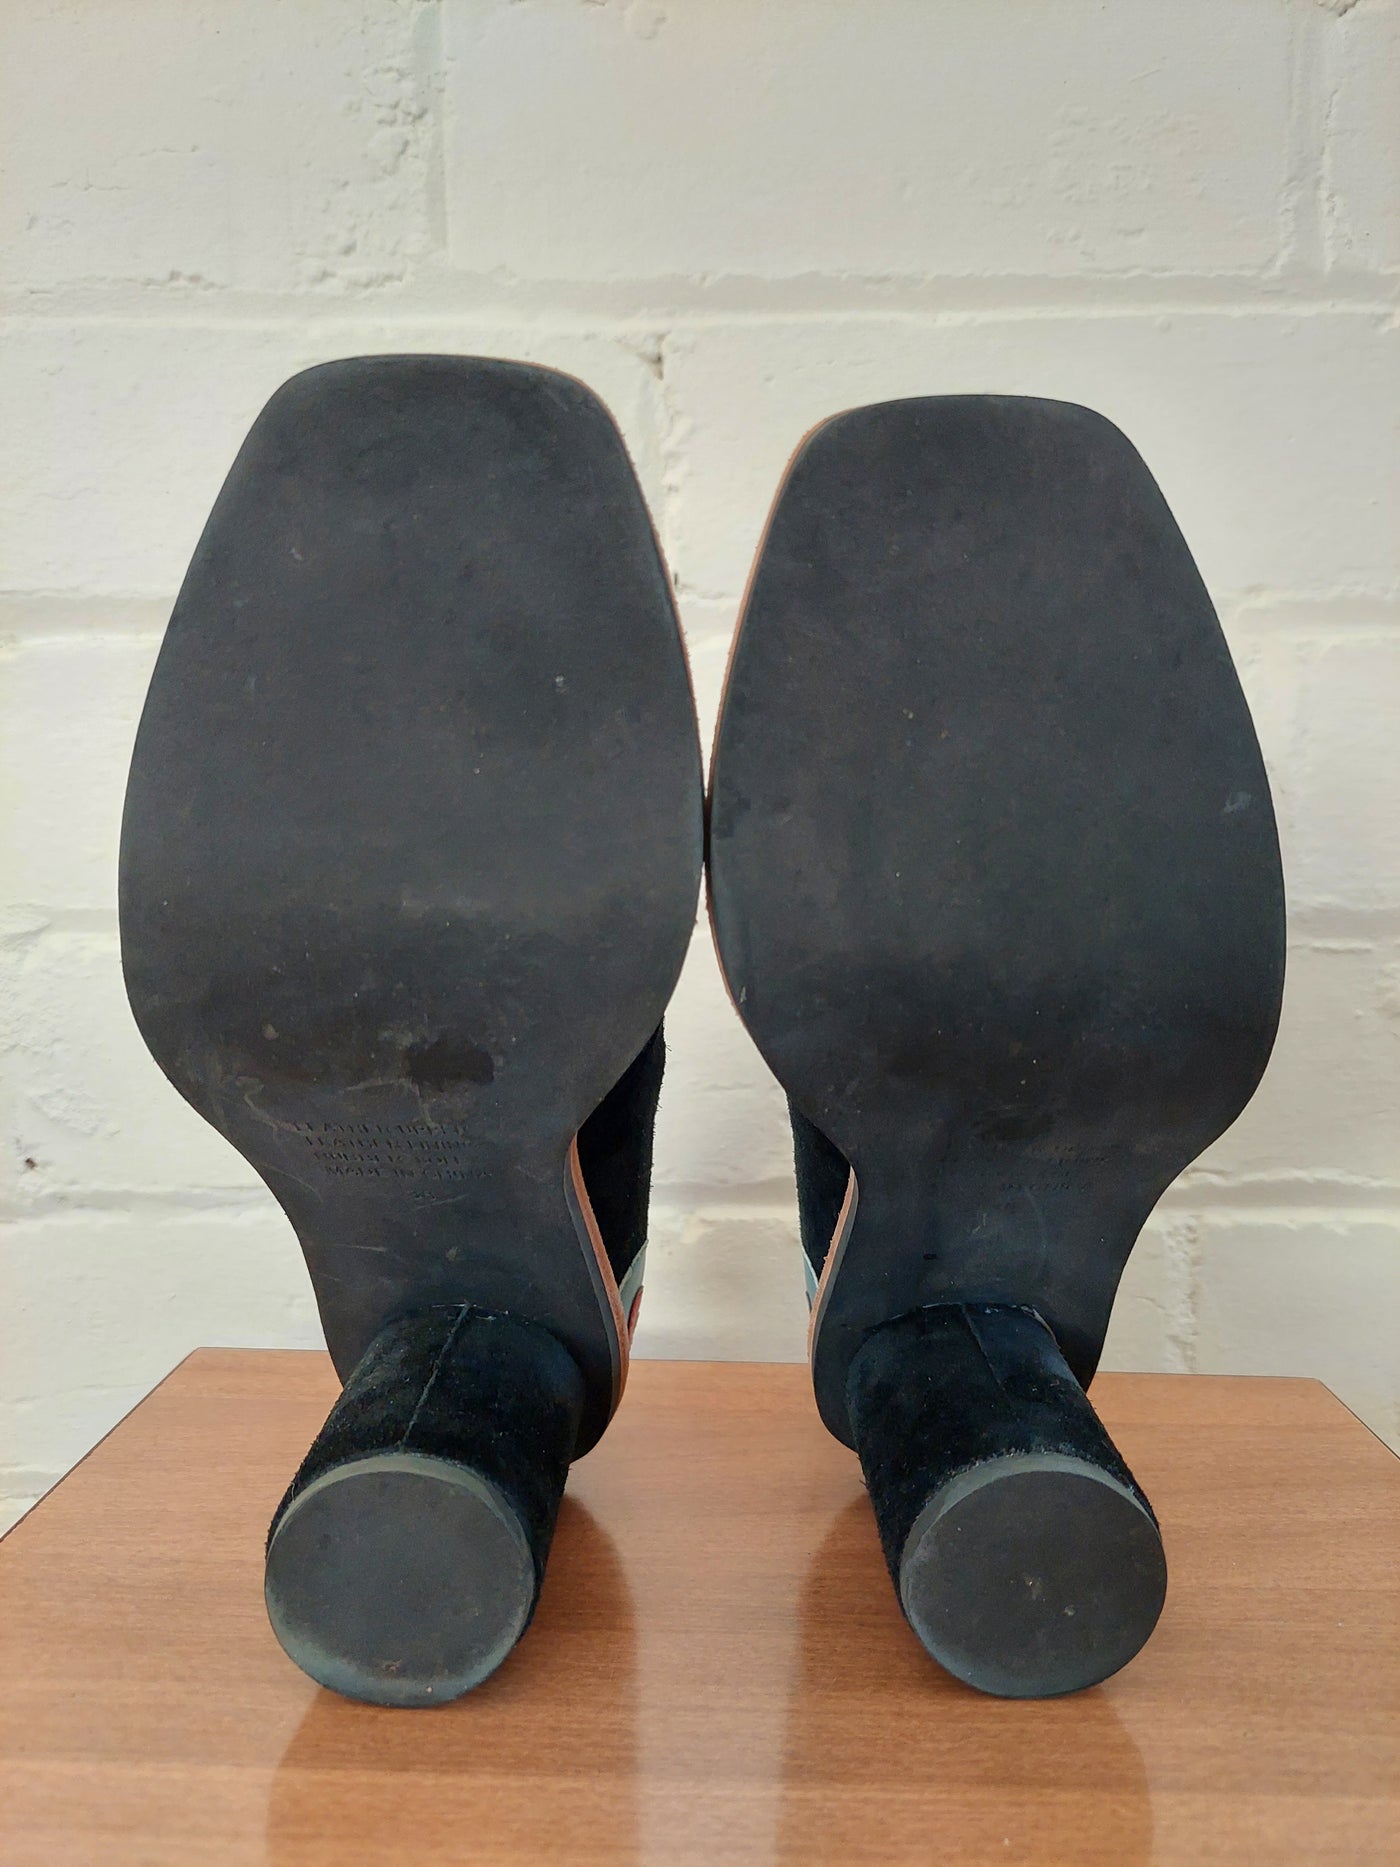 Gorman 'KALOCSAI' Black Suede Leather Heel, Size EU 36 / AU 5